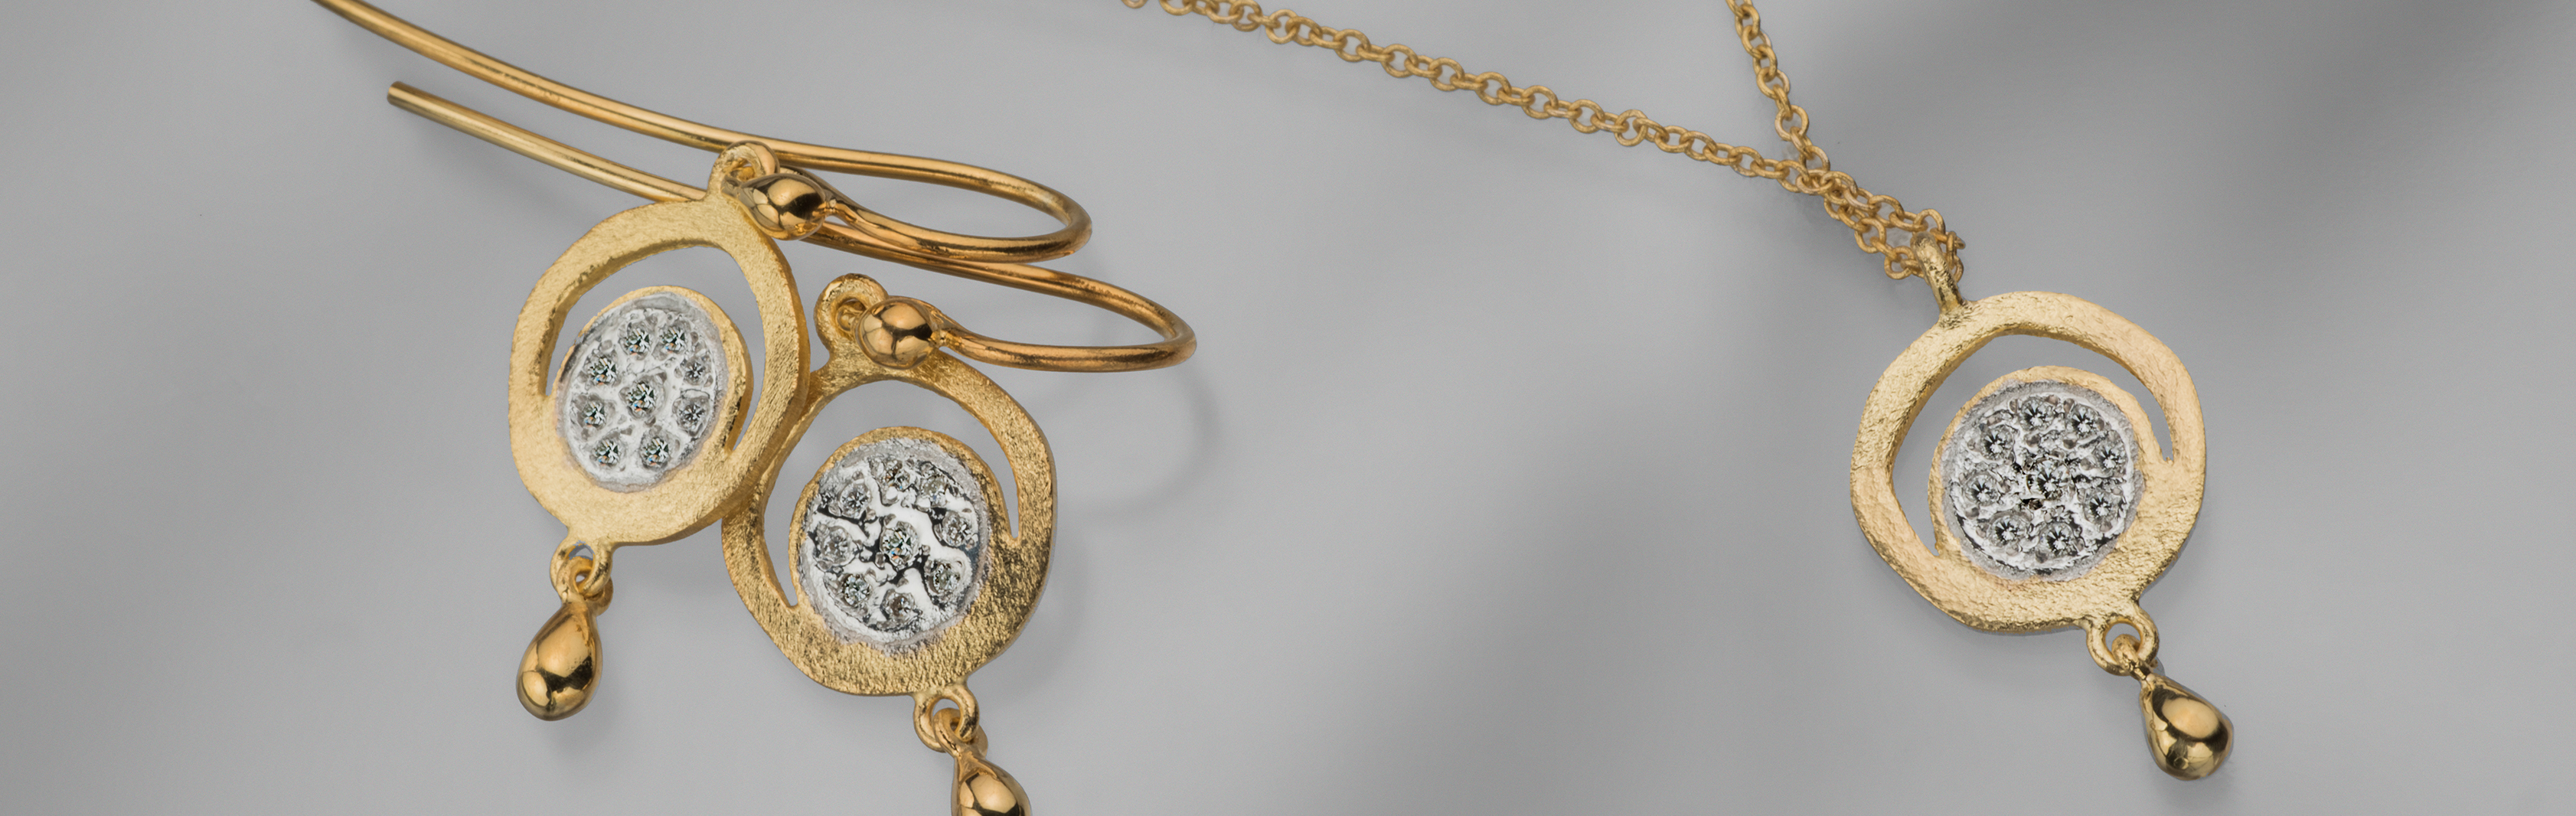 קולקציית נטיפי יהלום - תכשיטי זהב 14 קראט ויהלומים